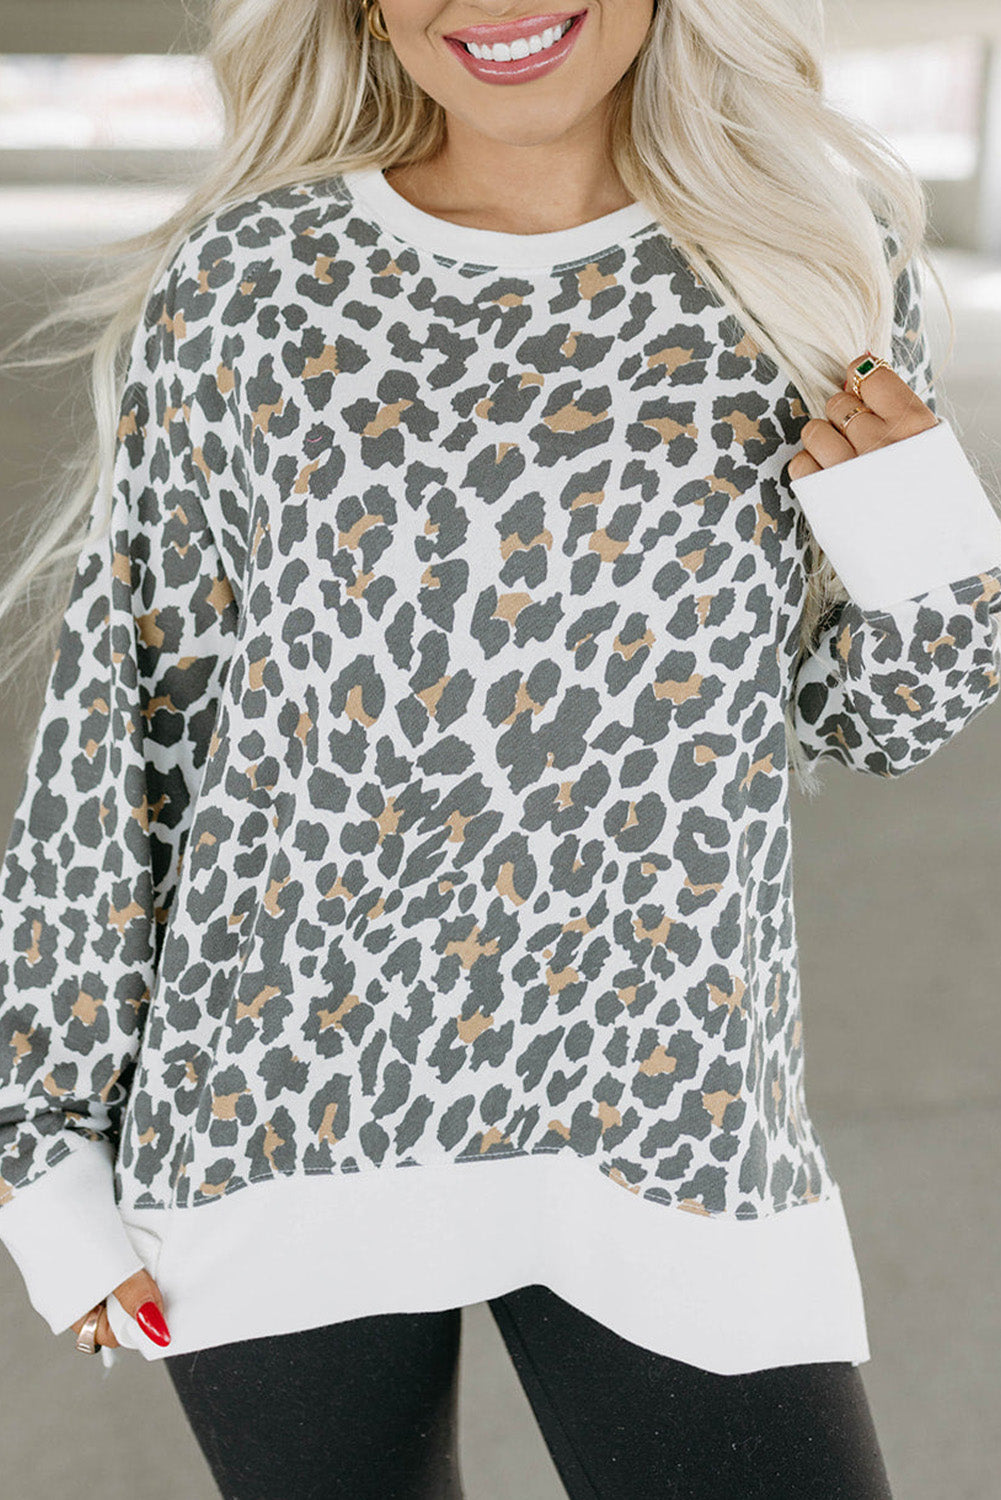 Weißes, bedrucktes Oberteil mit Leopardenmuster und einfarbigem Besatz